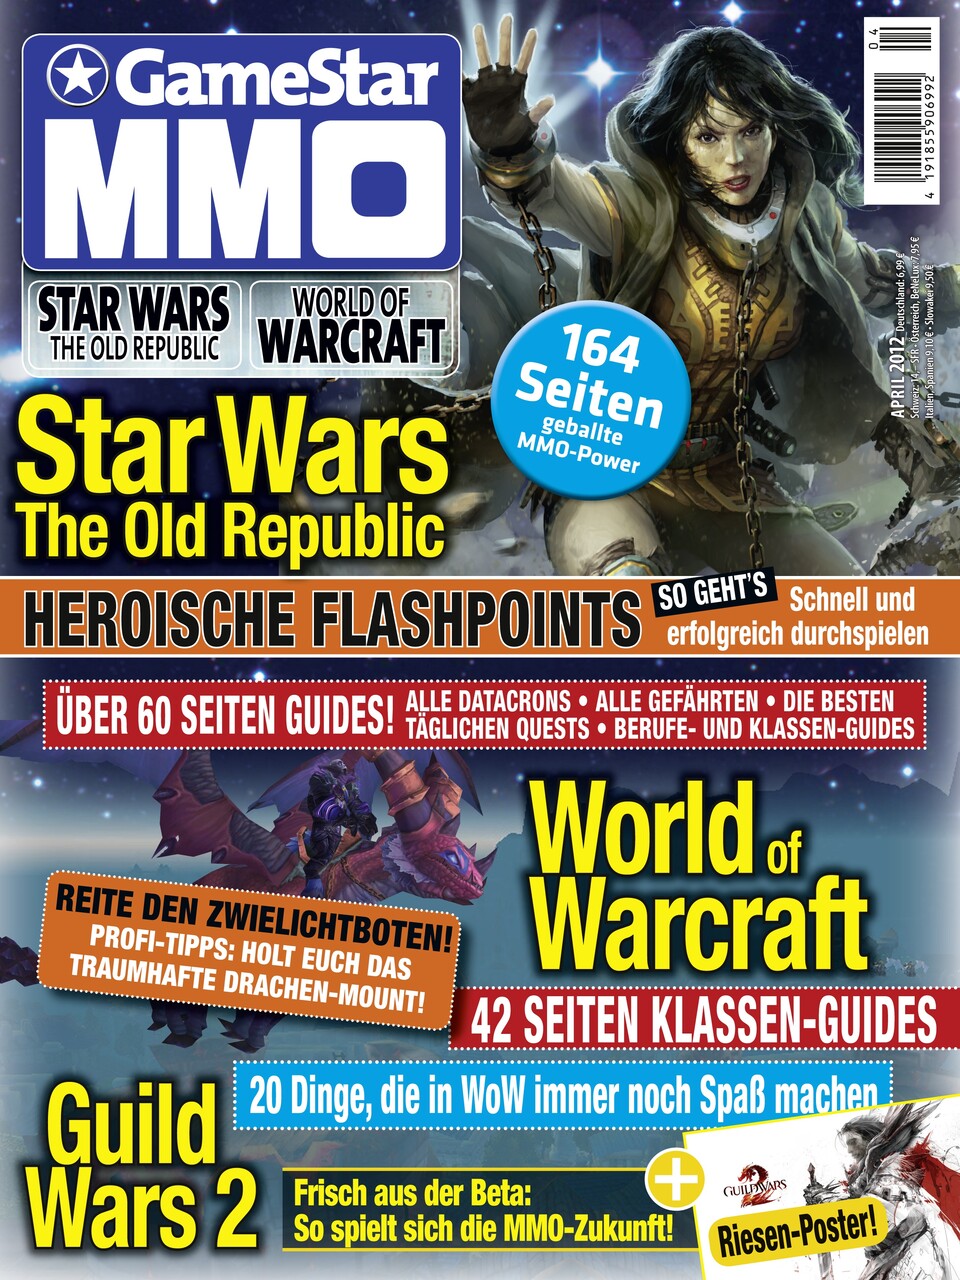 Die neue Ausgabe des GameStar MMO Magazins ist ab 21. März erhältlich.